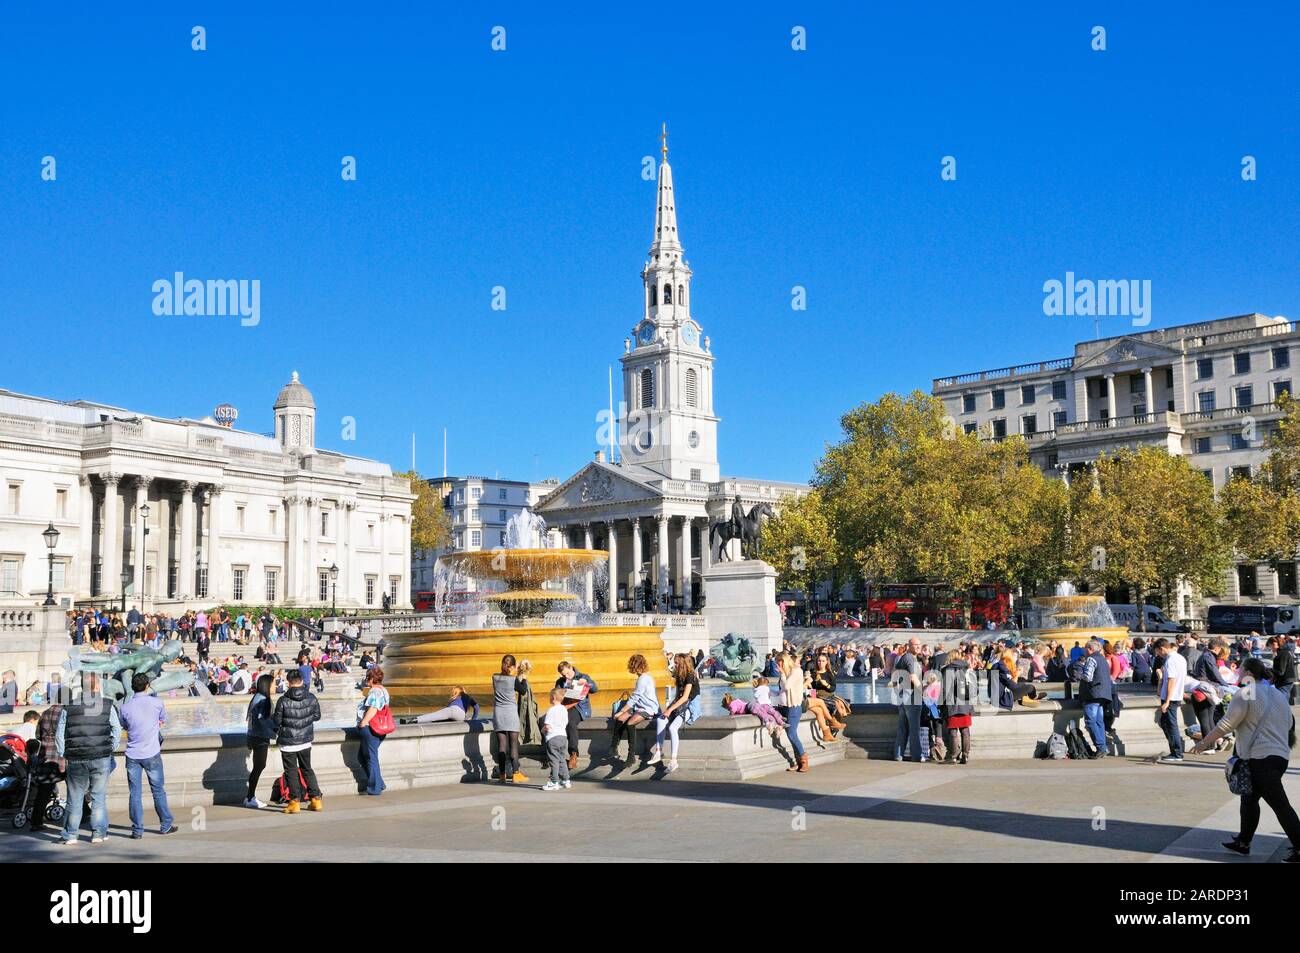 Les touristes assis autour des fontaines dans une place ensoleillée Trafalgar avec l'église St Martin-in-the-Fields en arrière-plan, Londres, Angleterre, Royaume-Uni Banque D'Images